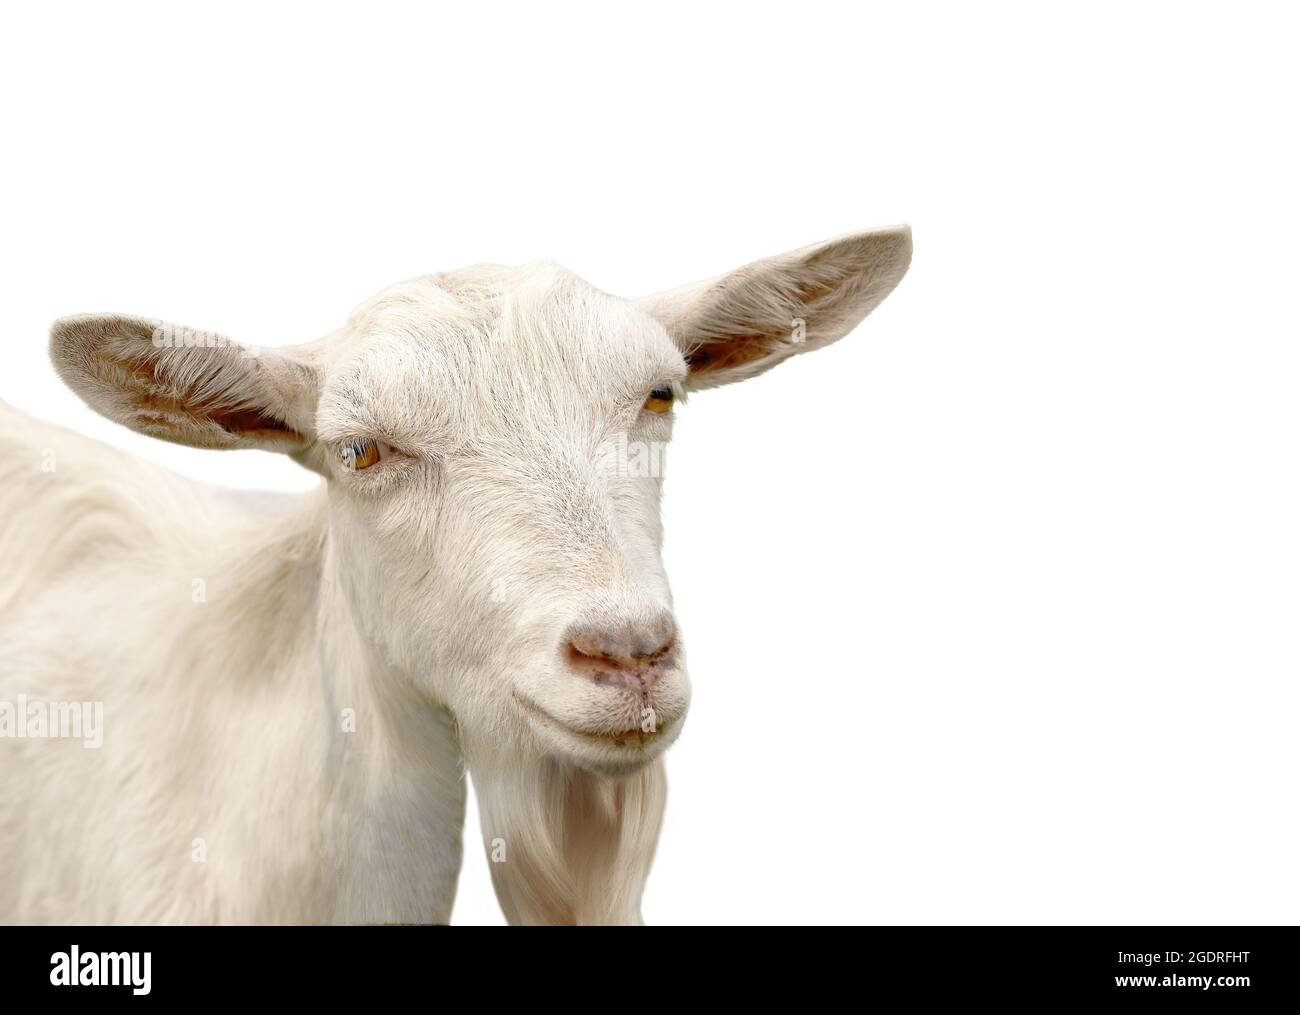 Retrato de una cabra lechera blanca sin cuerno con ojos anaranjados Foto de stock